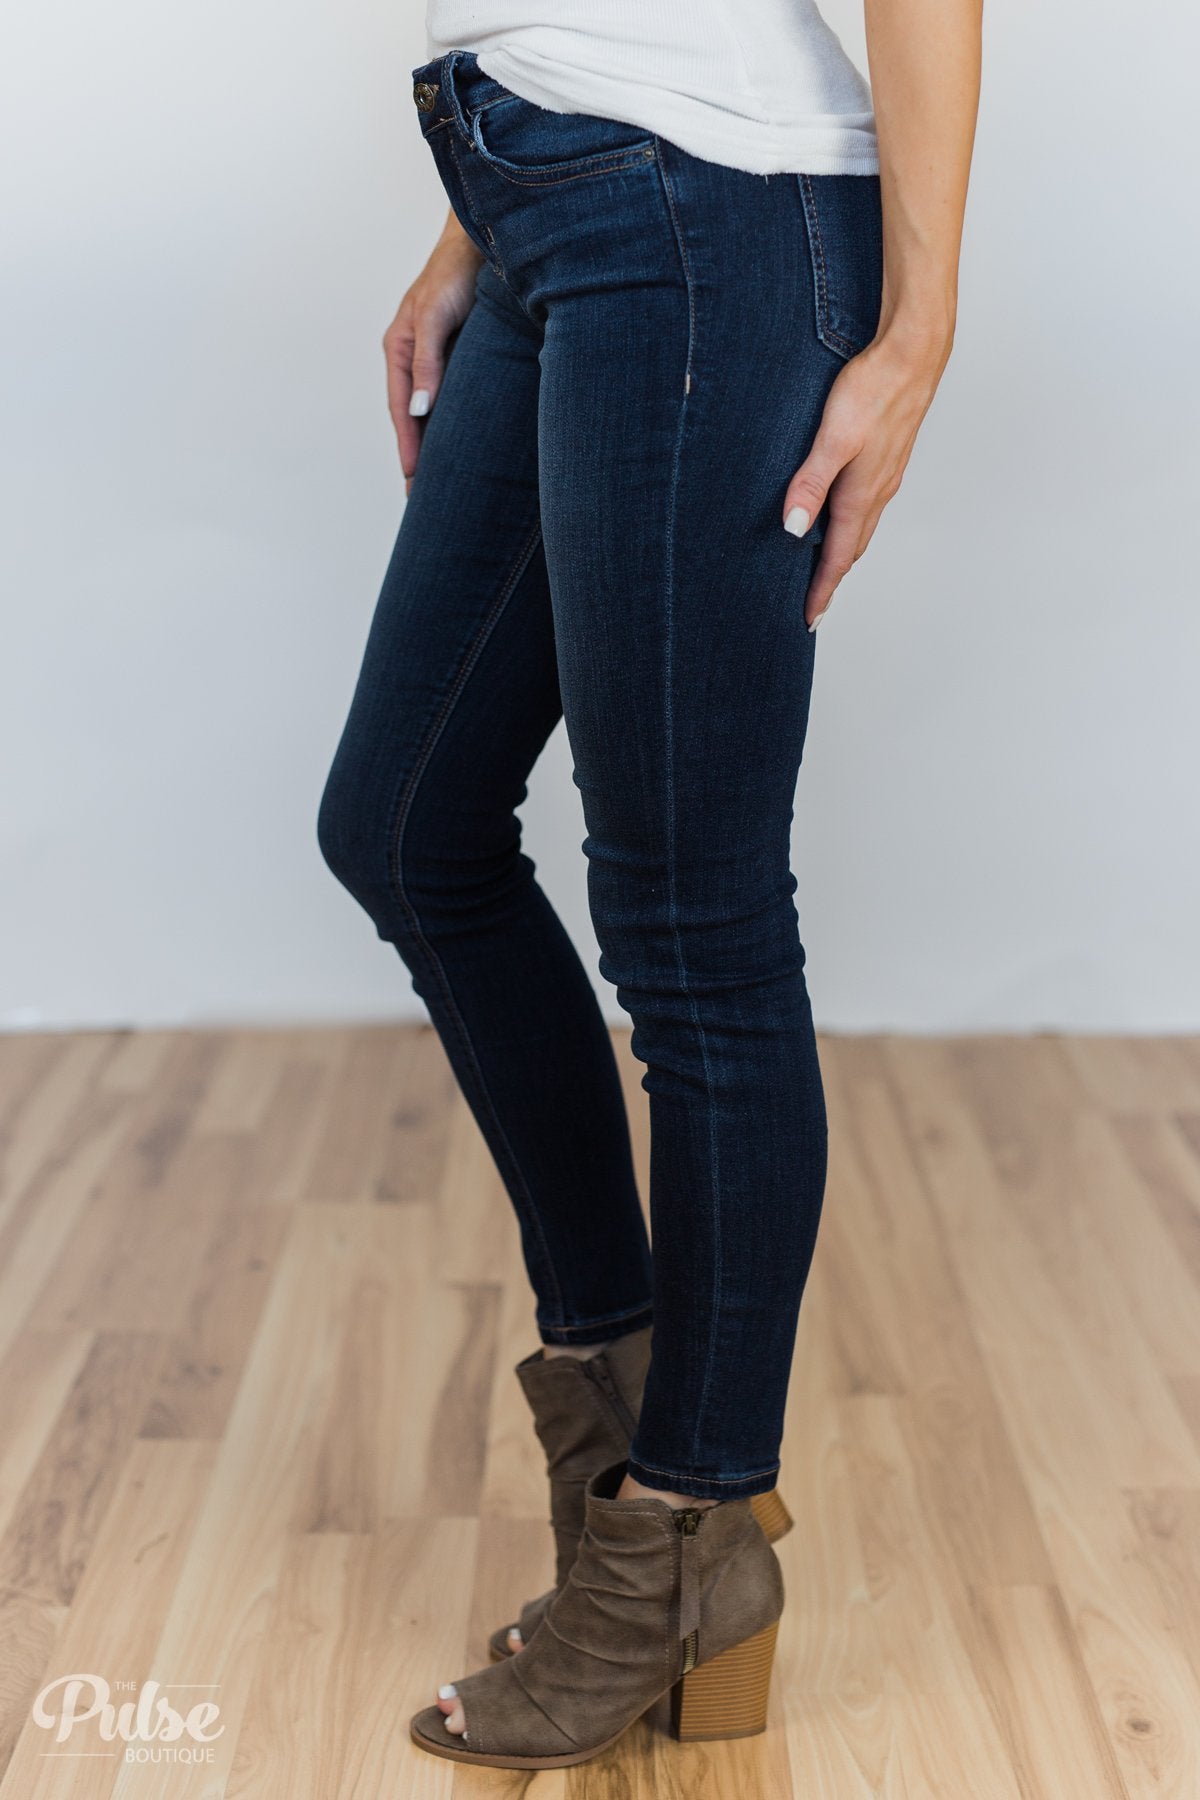 Sneak Peek Jeans- Claire Wash – The Pulse Boutique